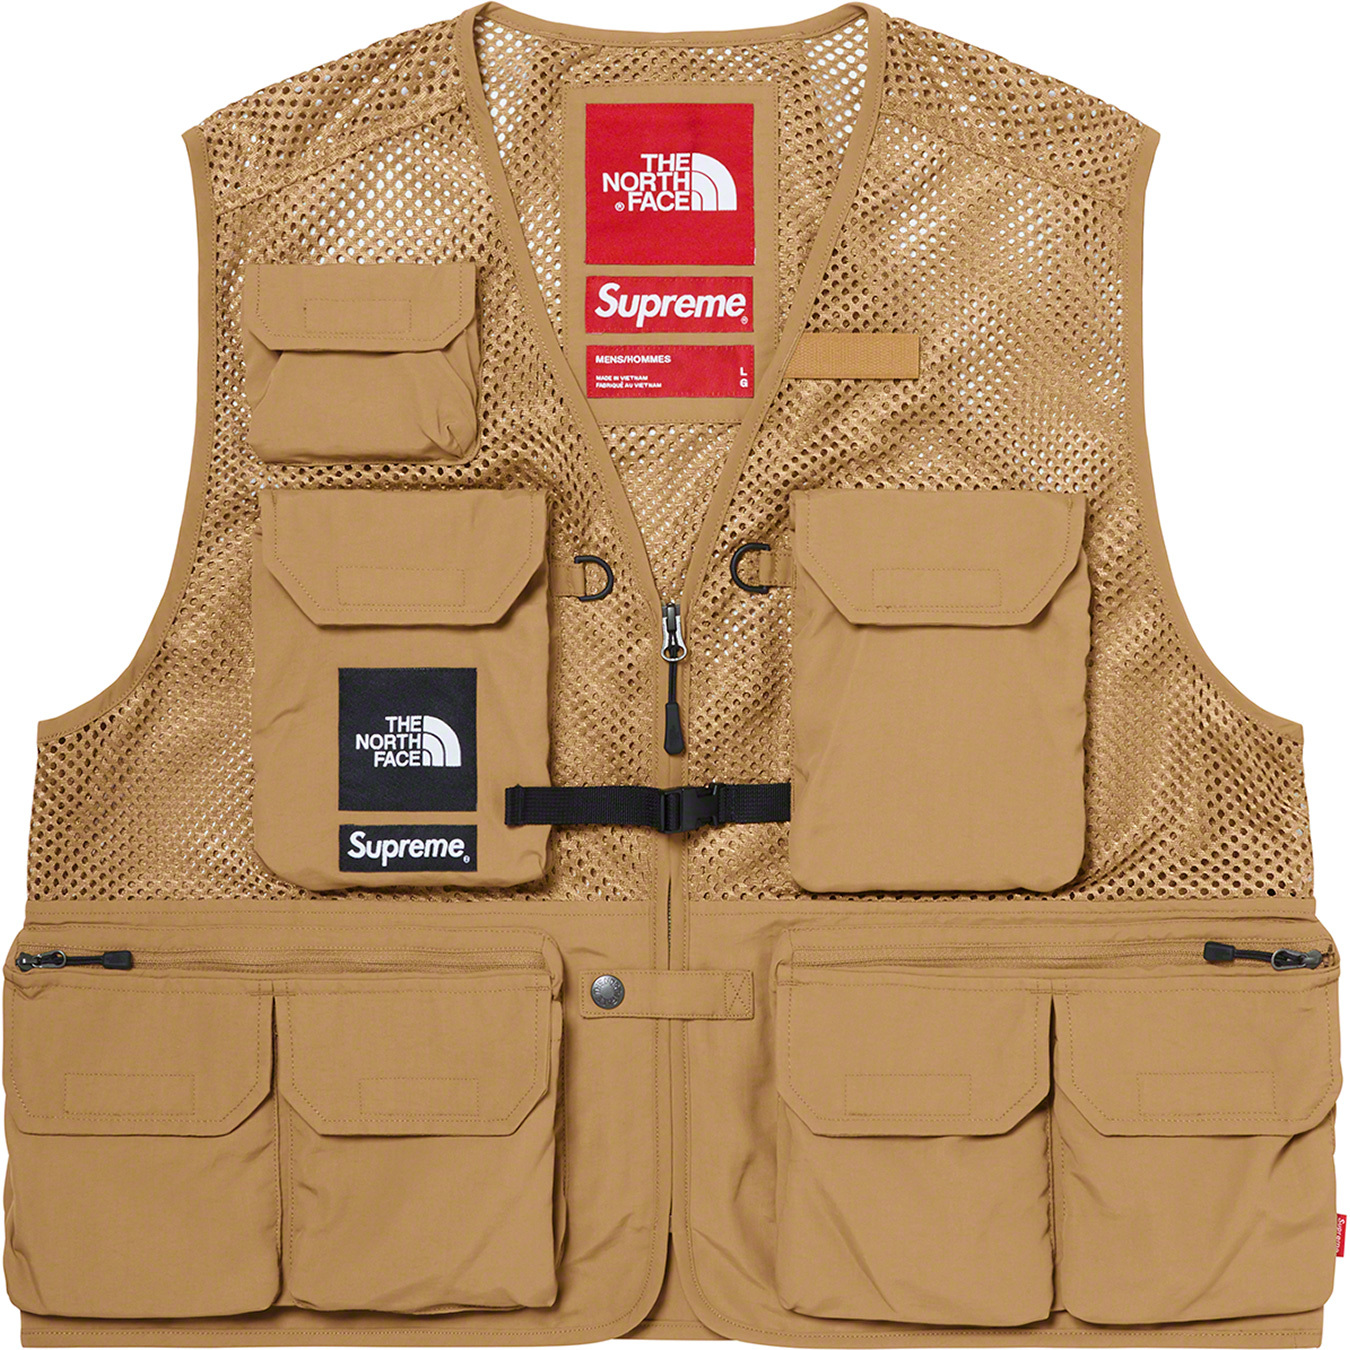 Supreme The North Face Cargo Vest Lサイズ